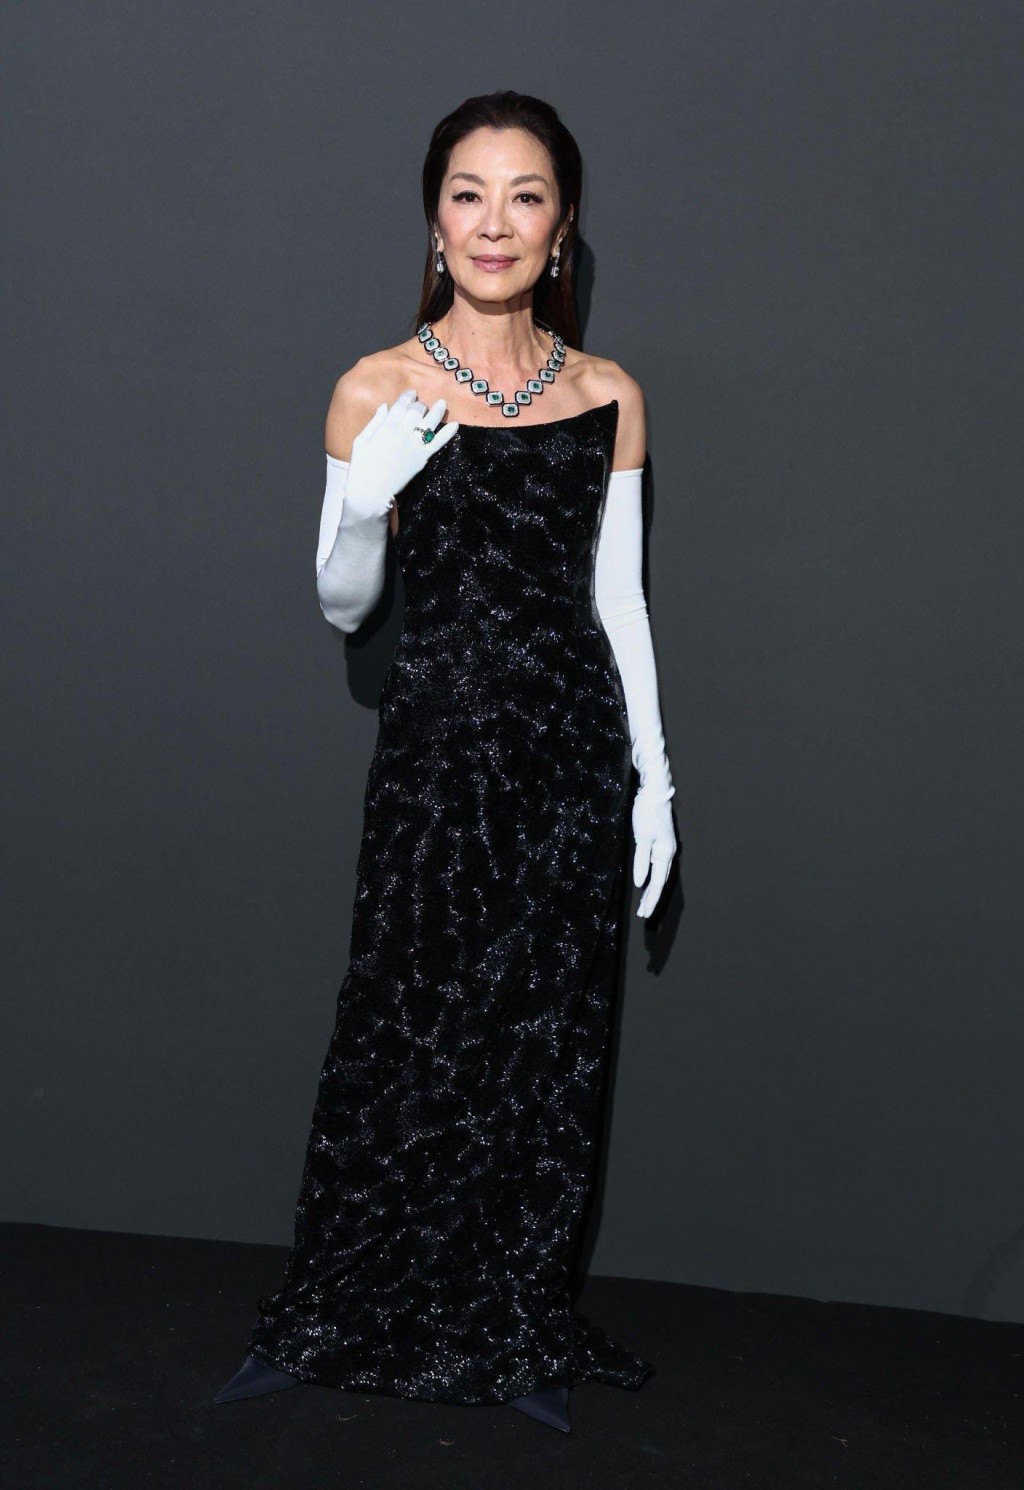 杨紫琼在颁奖礼获奖表扬以女性身份作出的贡献。